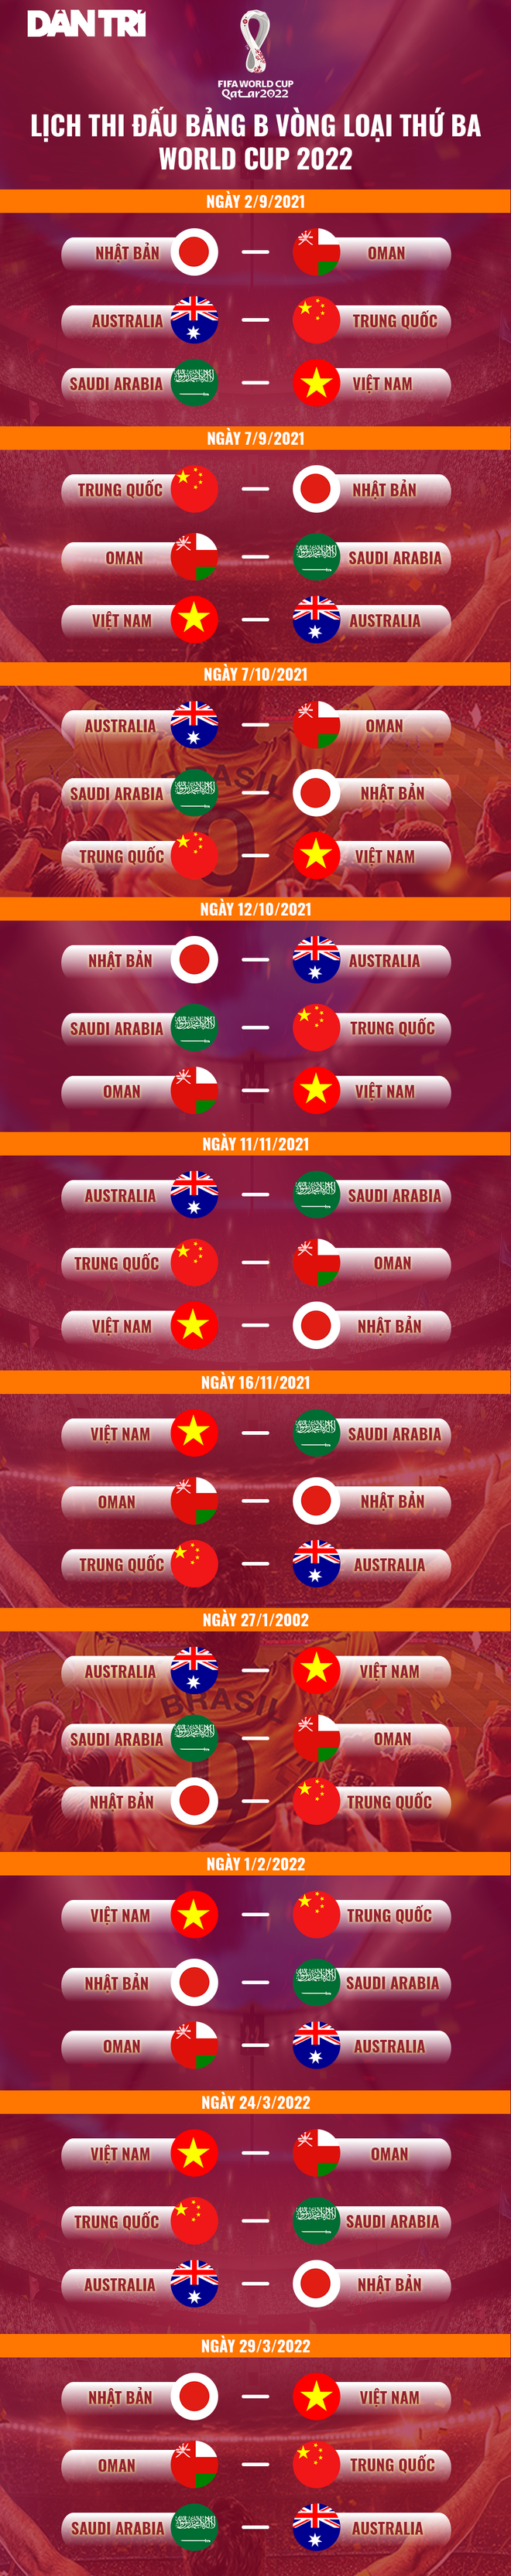 Trung Quốc tiếp đội tuyển Việt Nam trên sân nhà ở vòng loại World Cup - 2